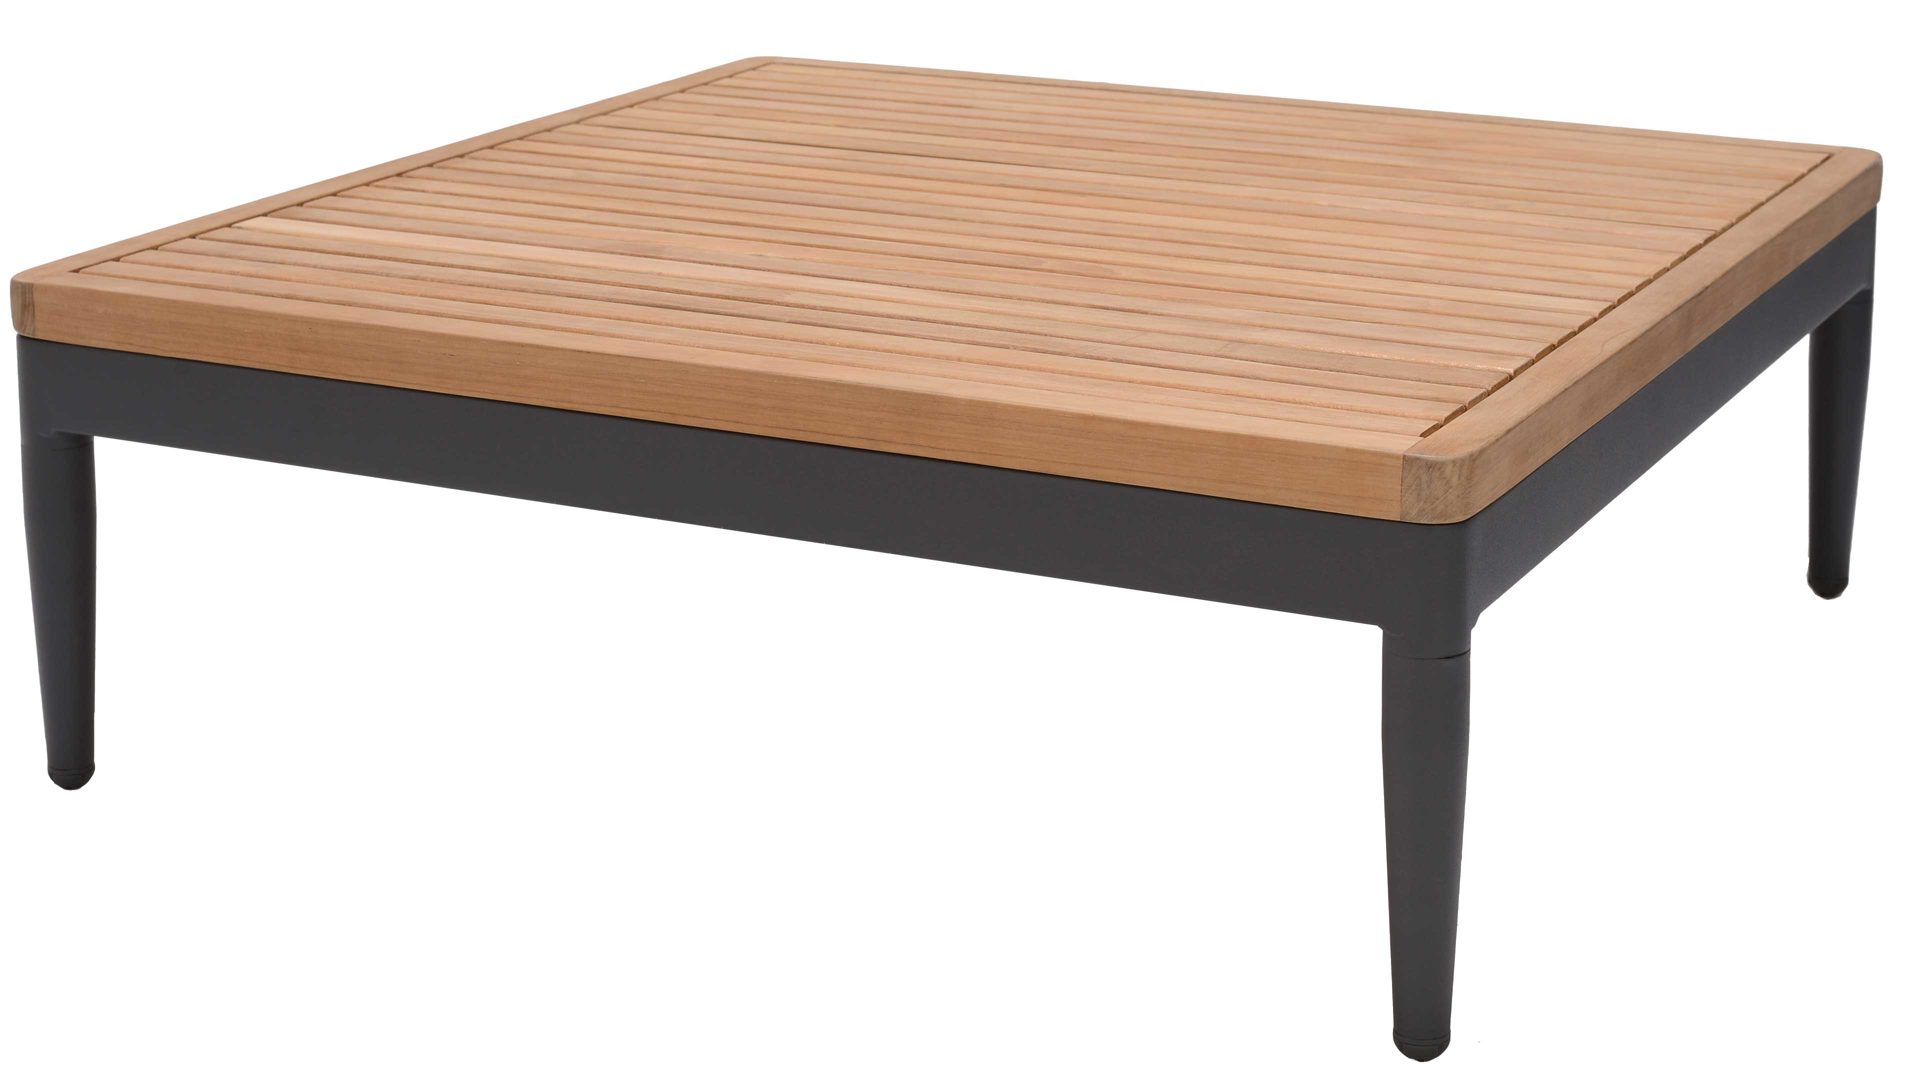 Gartentisch Scancom aus Holz in Holzfarben LifestyleGarden® Gartenmöbel Serie Topaz Teakholz & graues Aluminium - ca.  80 x 80 cm